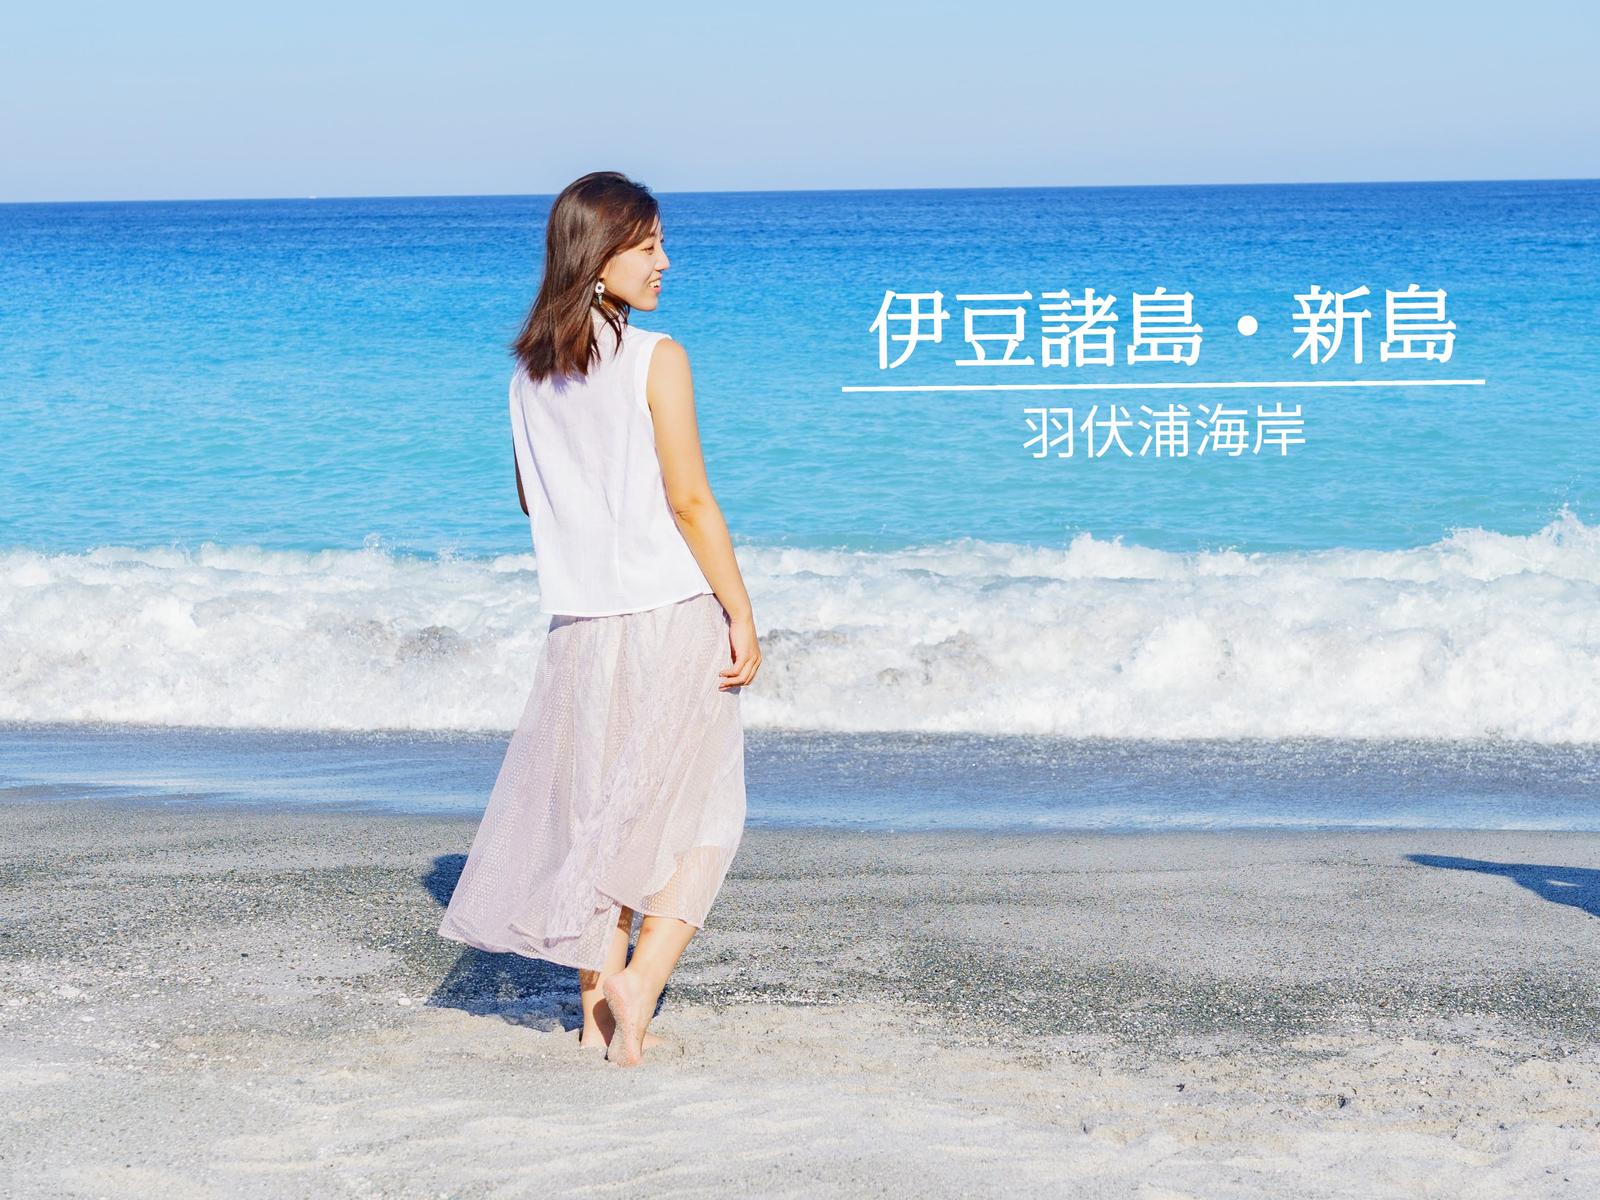 ここ 東京です 青い海と白い砂浜の新島 鈴木マイラ 伊豆諸島ナビが投稿したフォトブック Lemon8